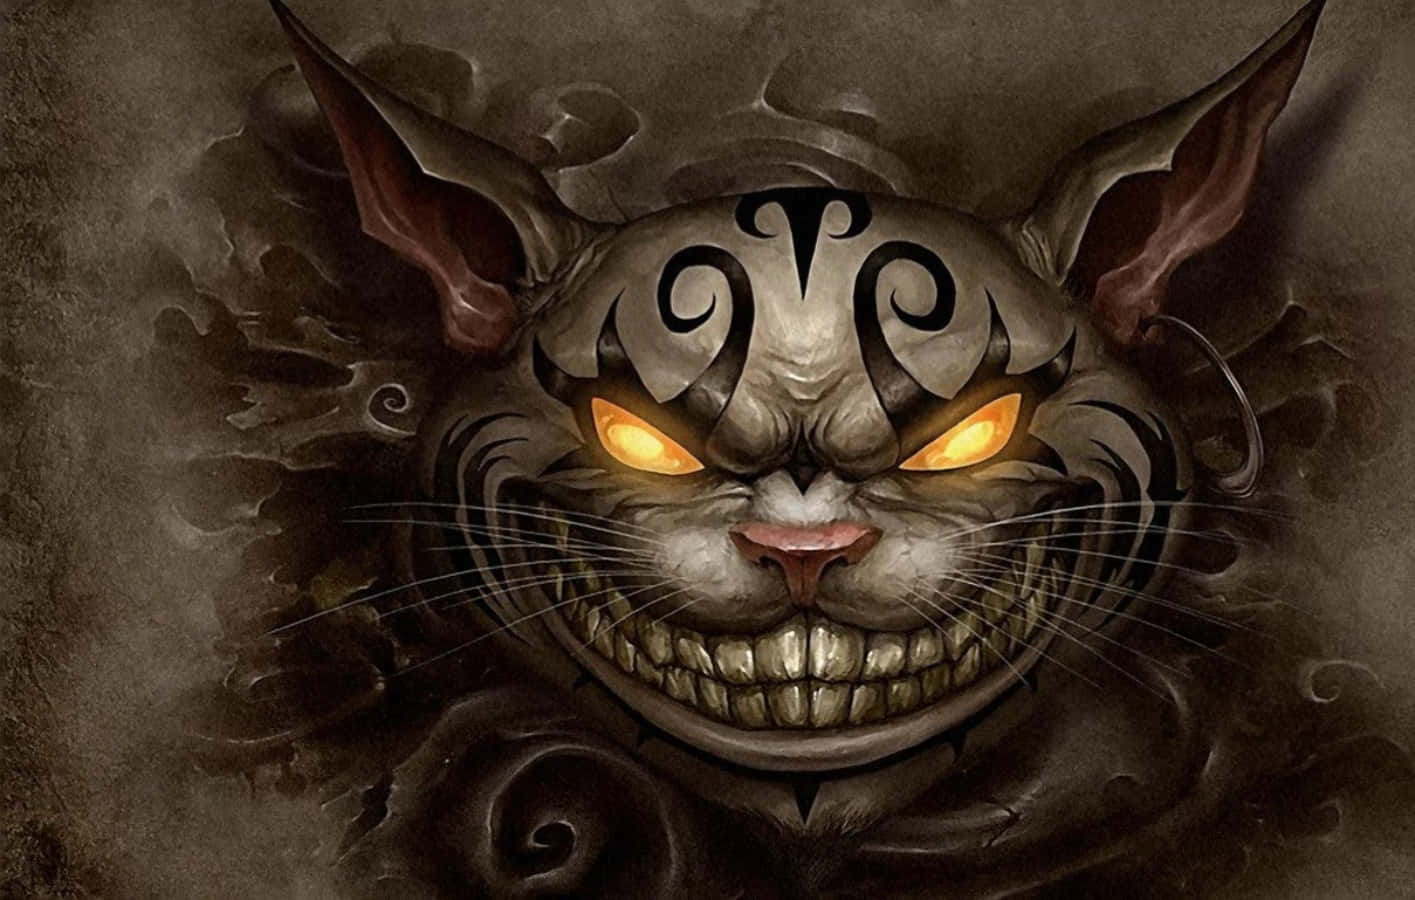 Medett Smil Luraraktigt Fyller Kattungen Från Cheshire Rummet Med Sin Busiga Charm.